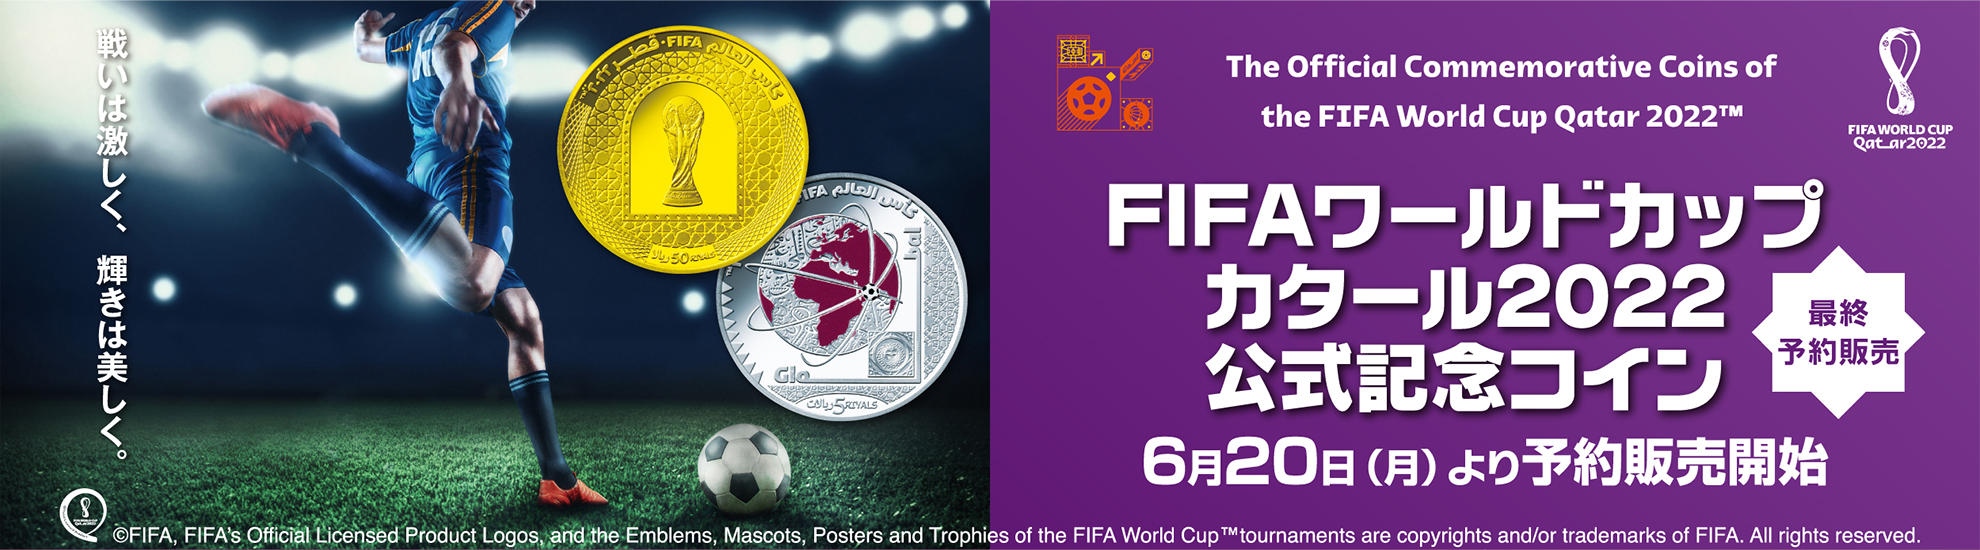 FIFAワールドカップ カタール2022 公式記念コイン 最終予約販売